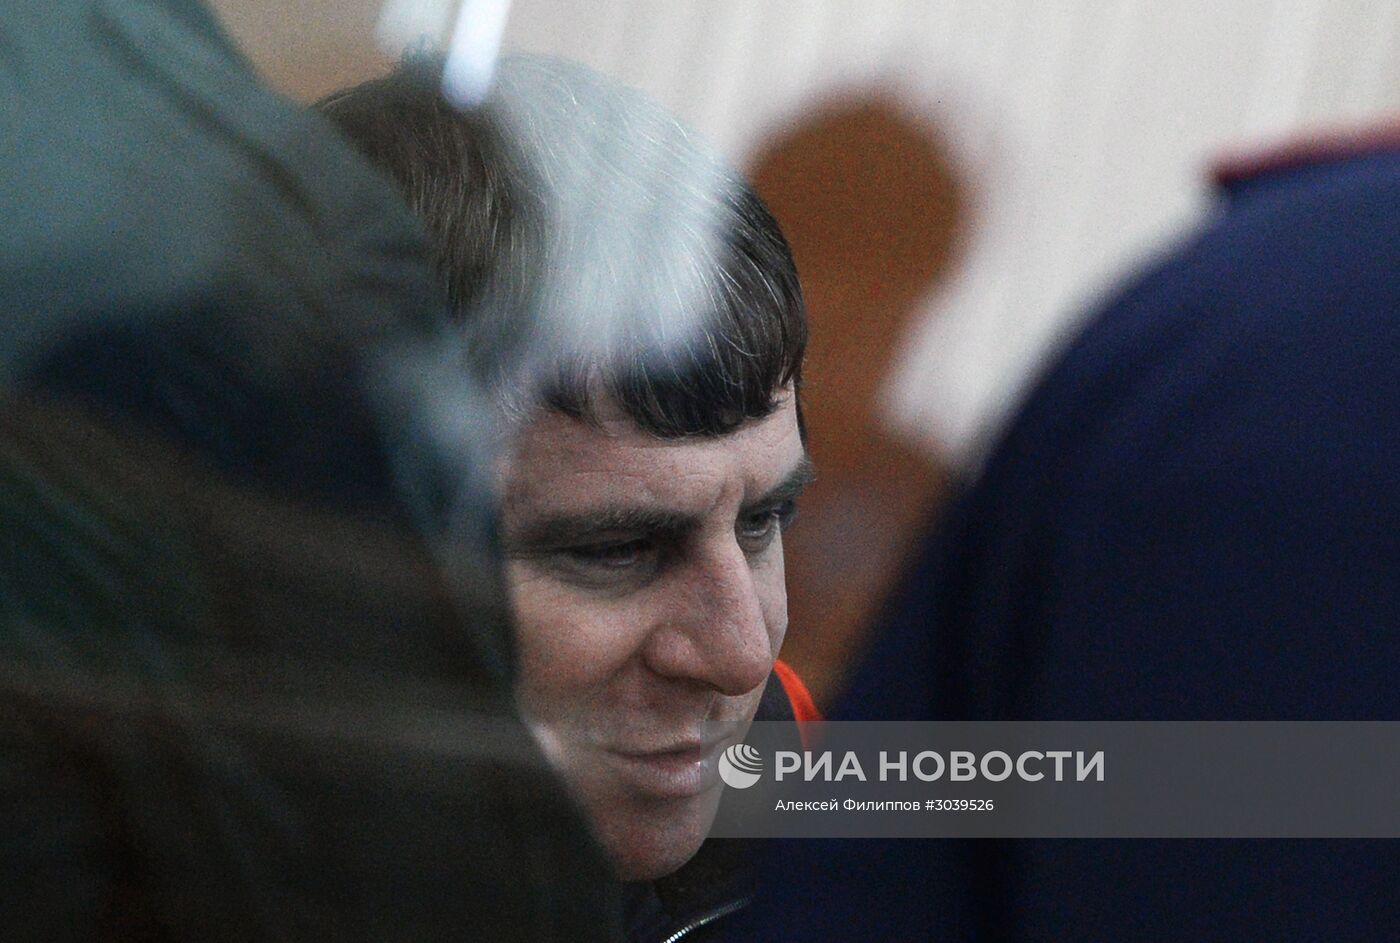 Заседание суда по делу об убийстве политика Б. Немцова